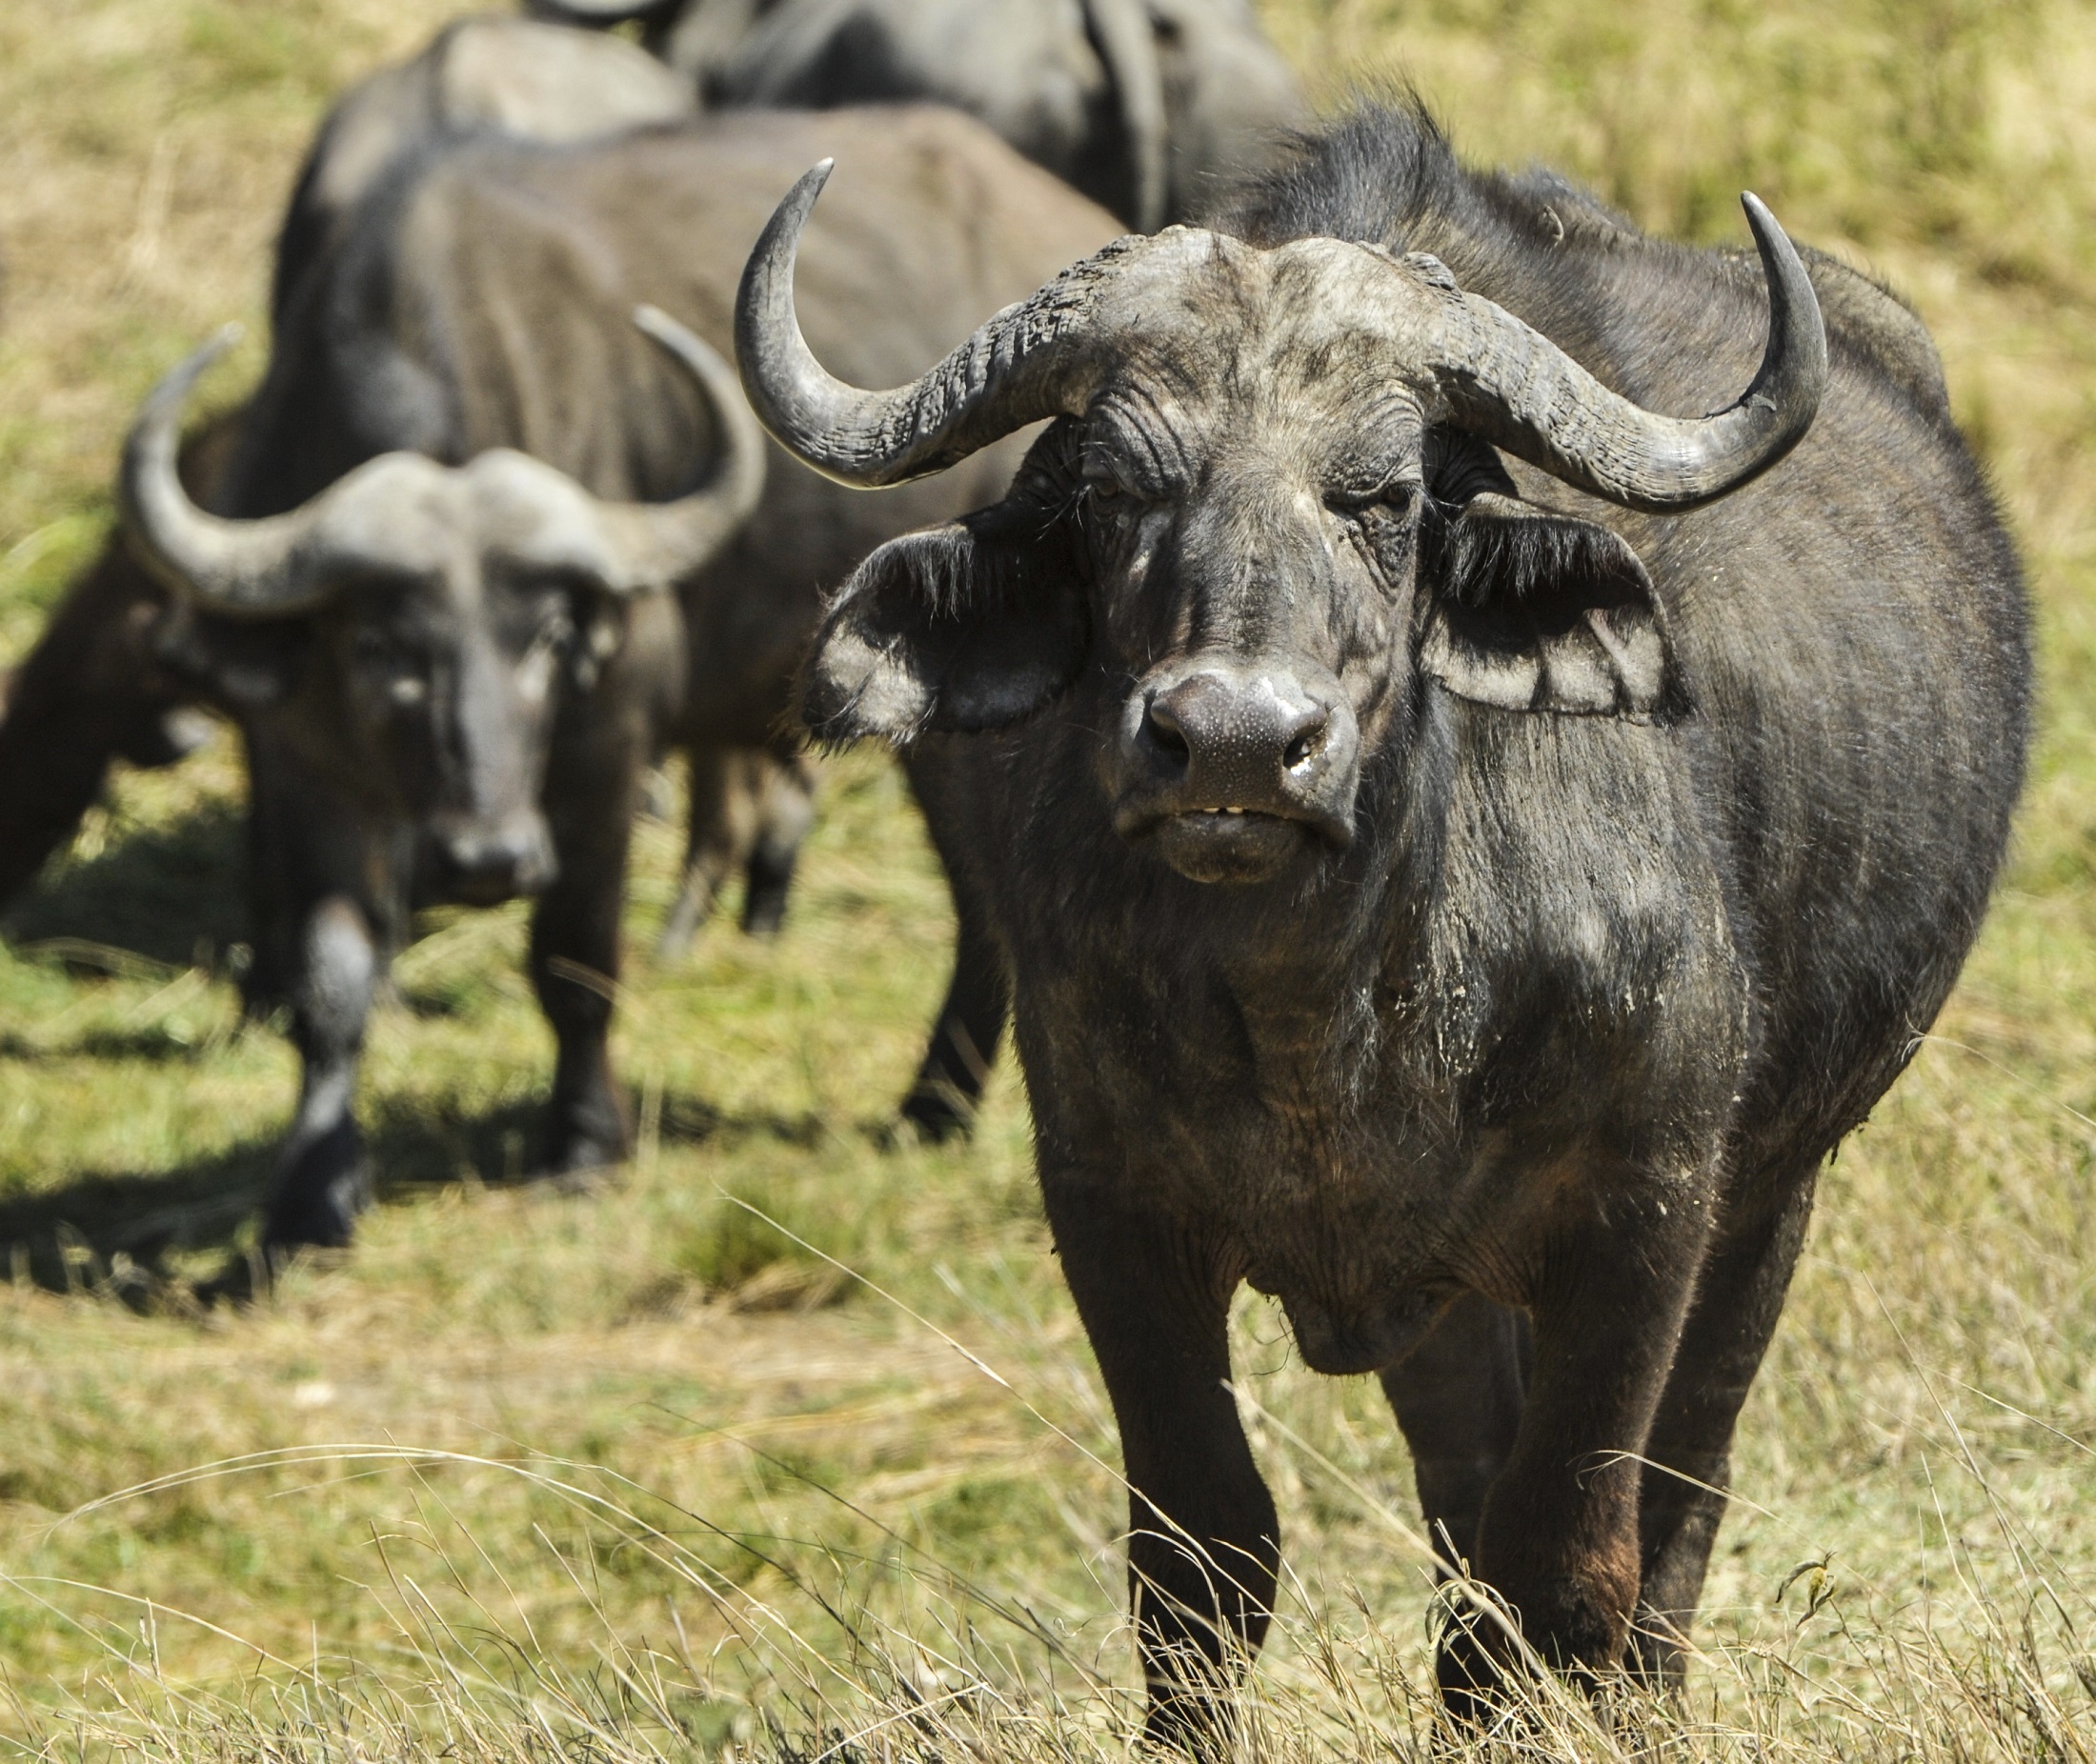 Cape buffalo photo